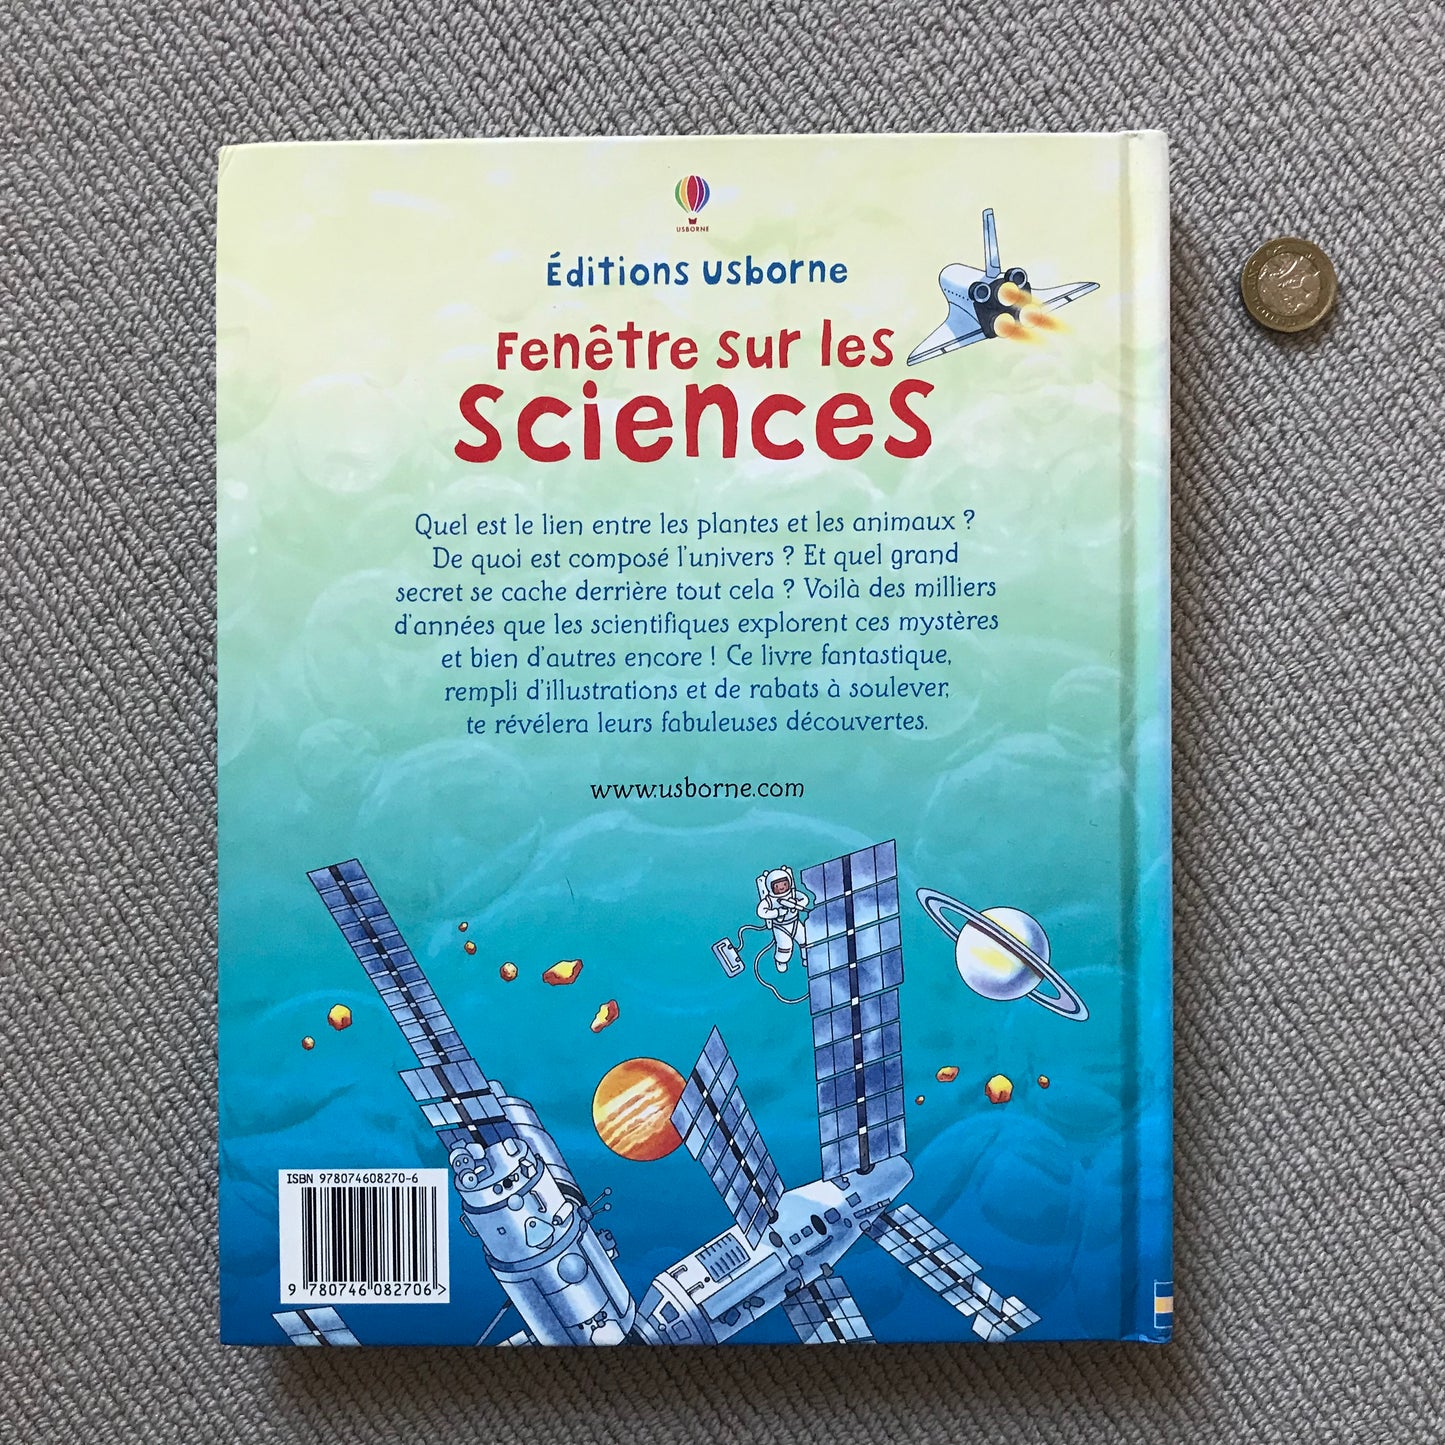 Les sciences (Fenêtre sur) - Pop up book